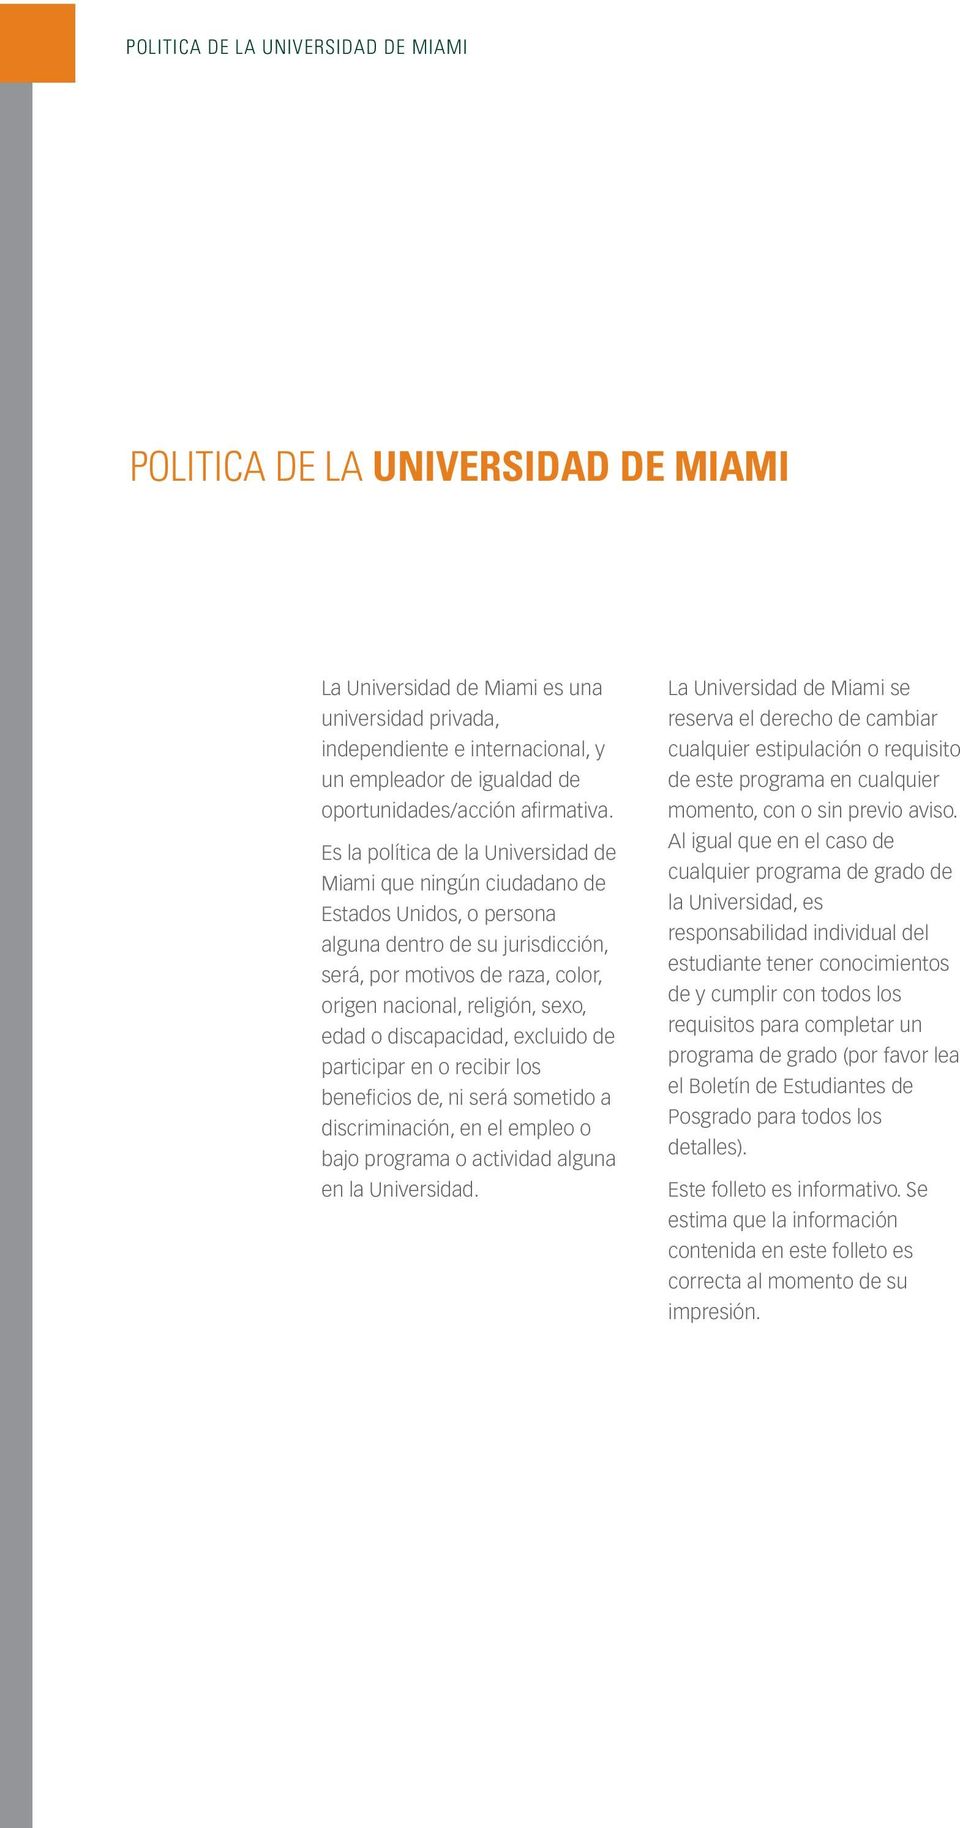 Es la política de la Universidad de Miami que ningún ciudadano de Estados Unidos, o persona alguna dentro de su jurisdicción, será, por motivos de raza, color, origen nacional, religión, sexo, edad o